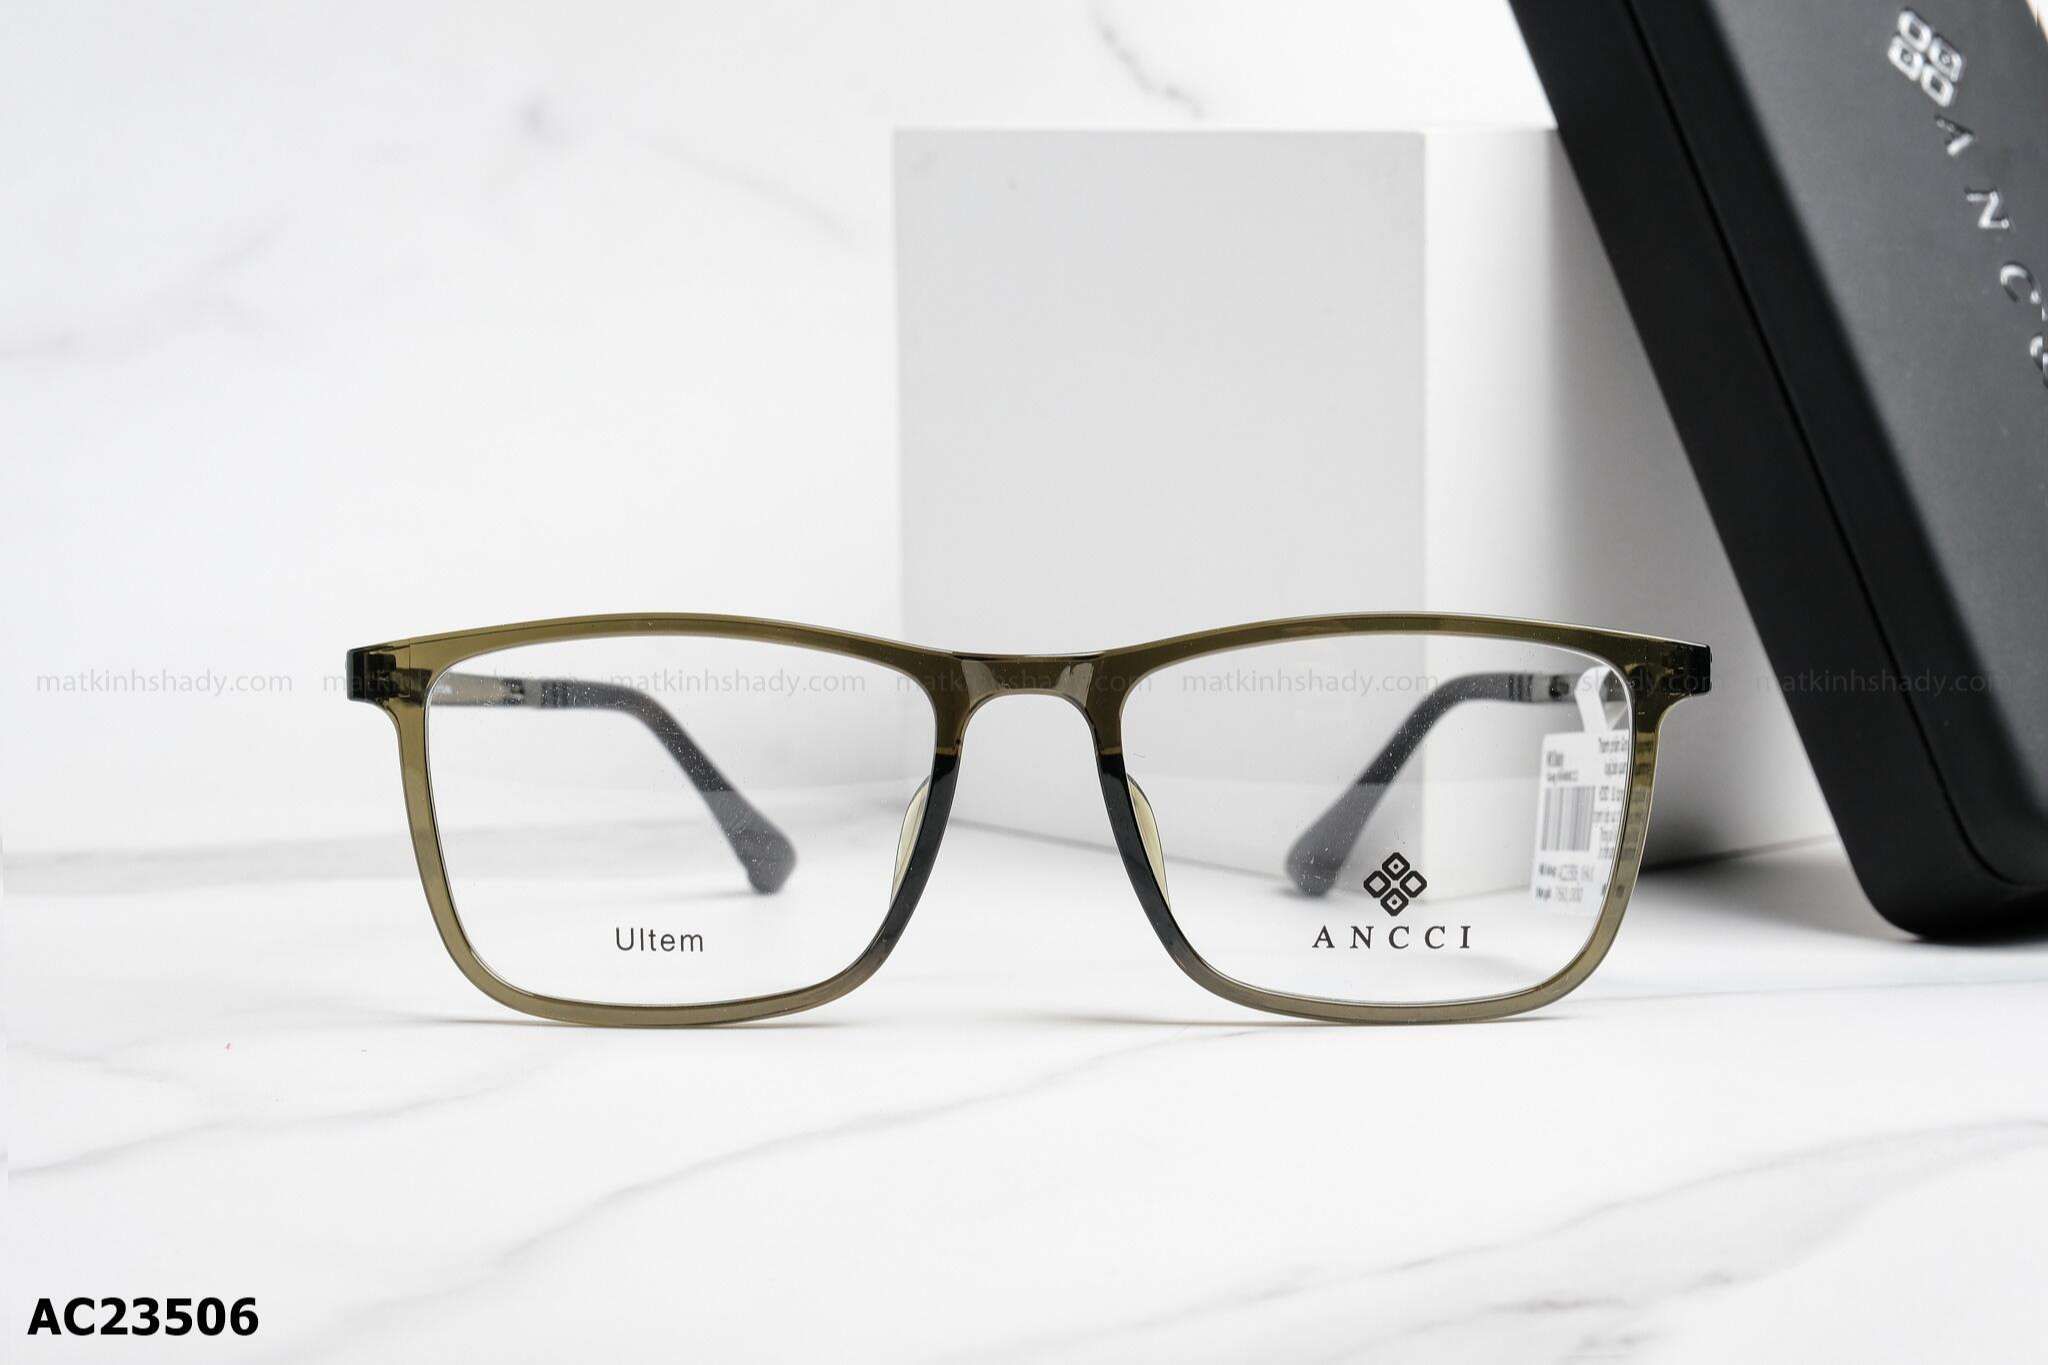  ANCCI Eyewear - Glasses - AC23506 